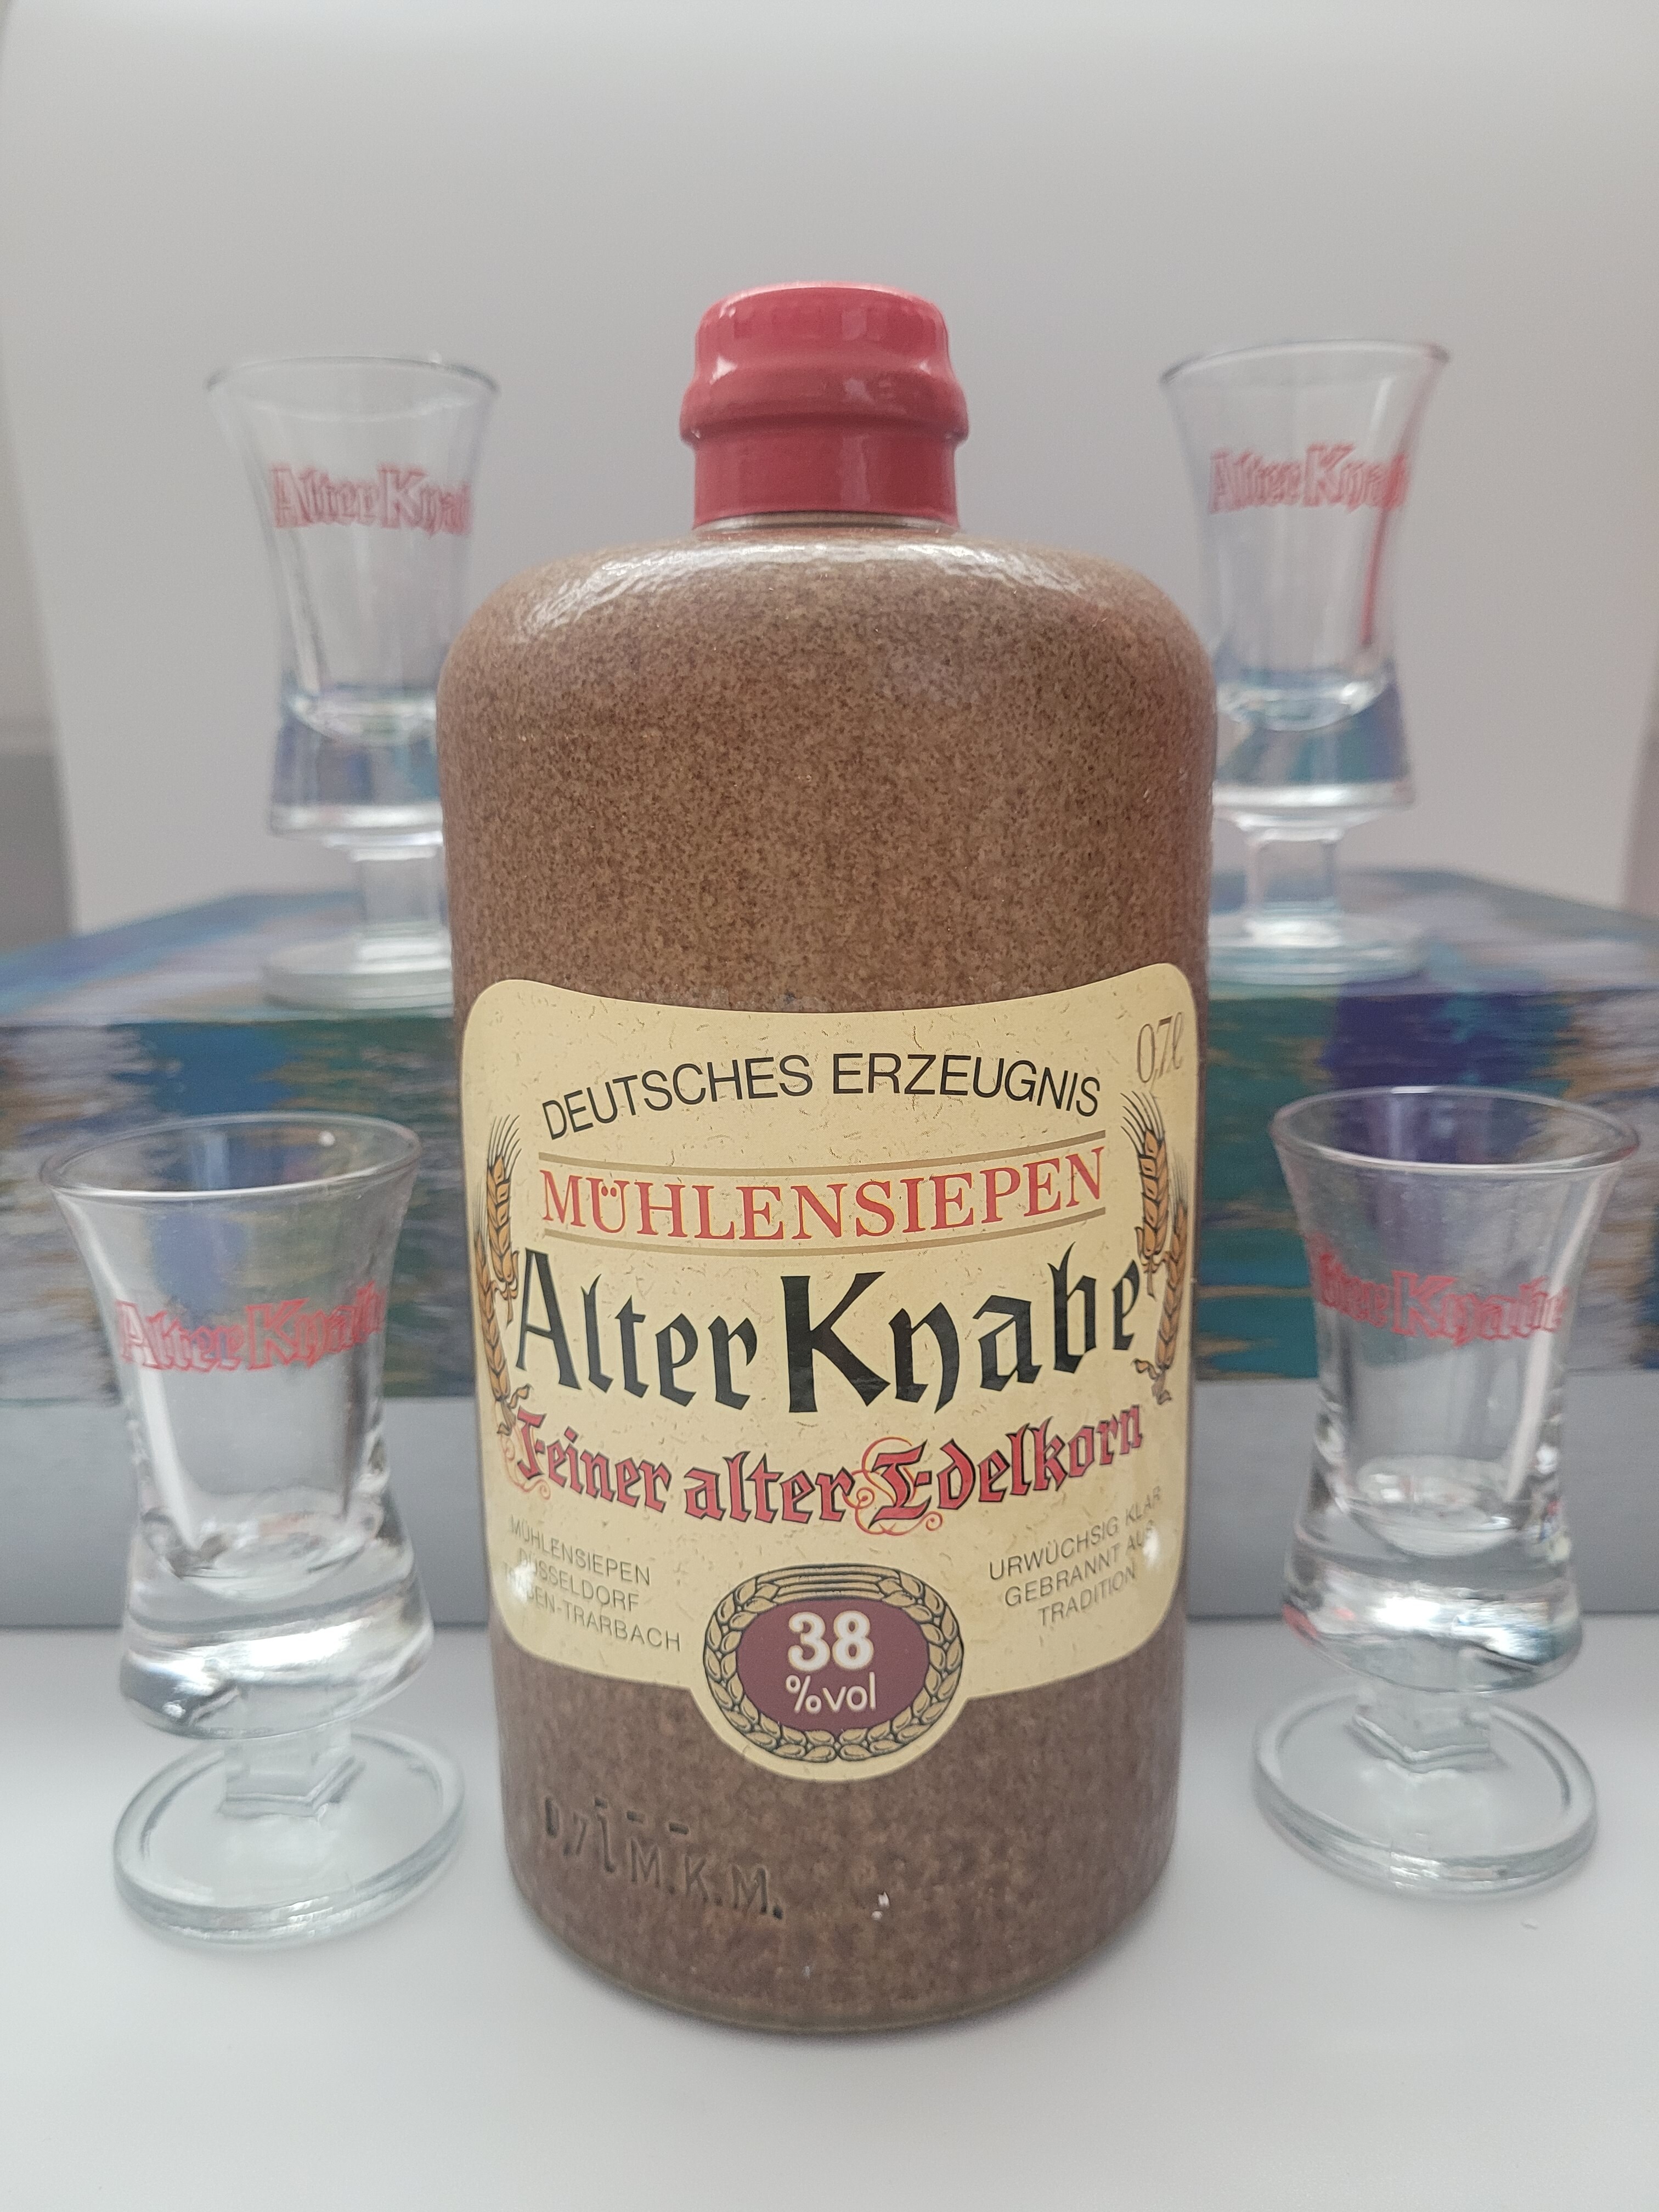 Alter Knabe Feiner alter Edelkorn Mühlensiepen Düsseldorf Deutschland 38%  VOL. (1x0,7ltr.) inkl. 4 Original 'alter Knabe' Shot-Gläser in Geschenkbox